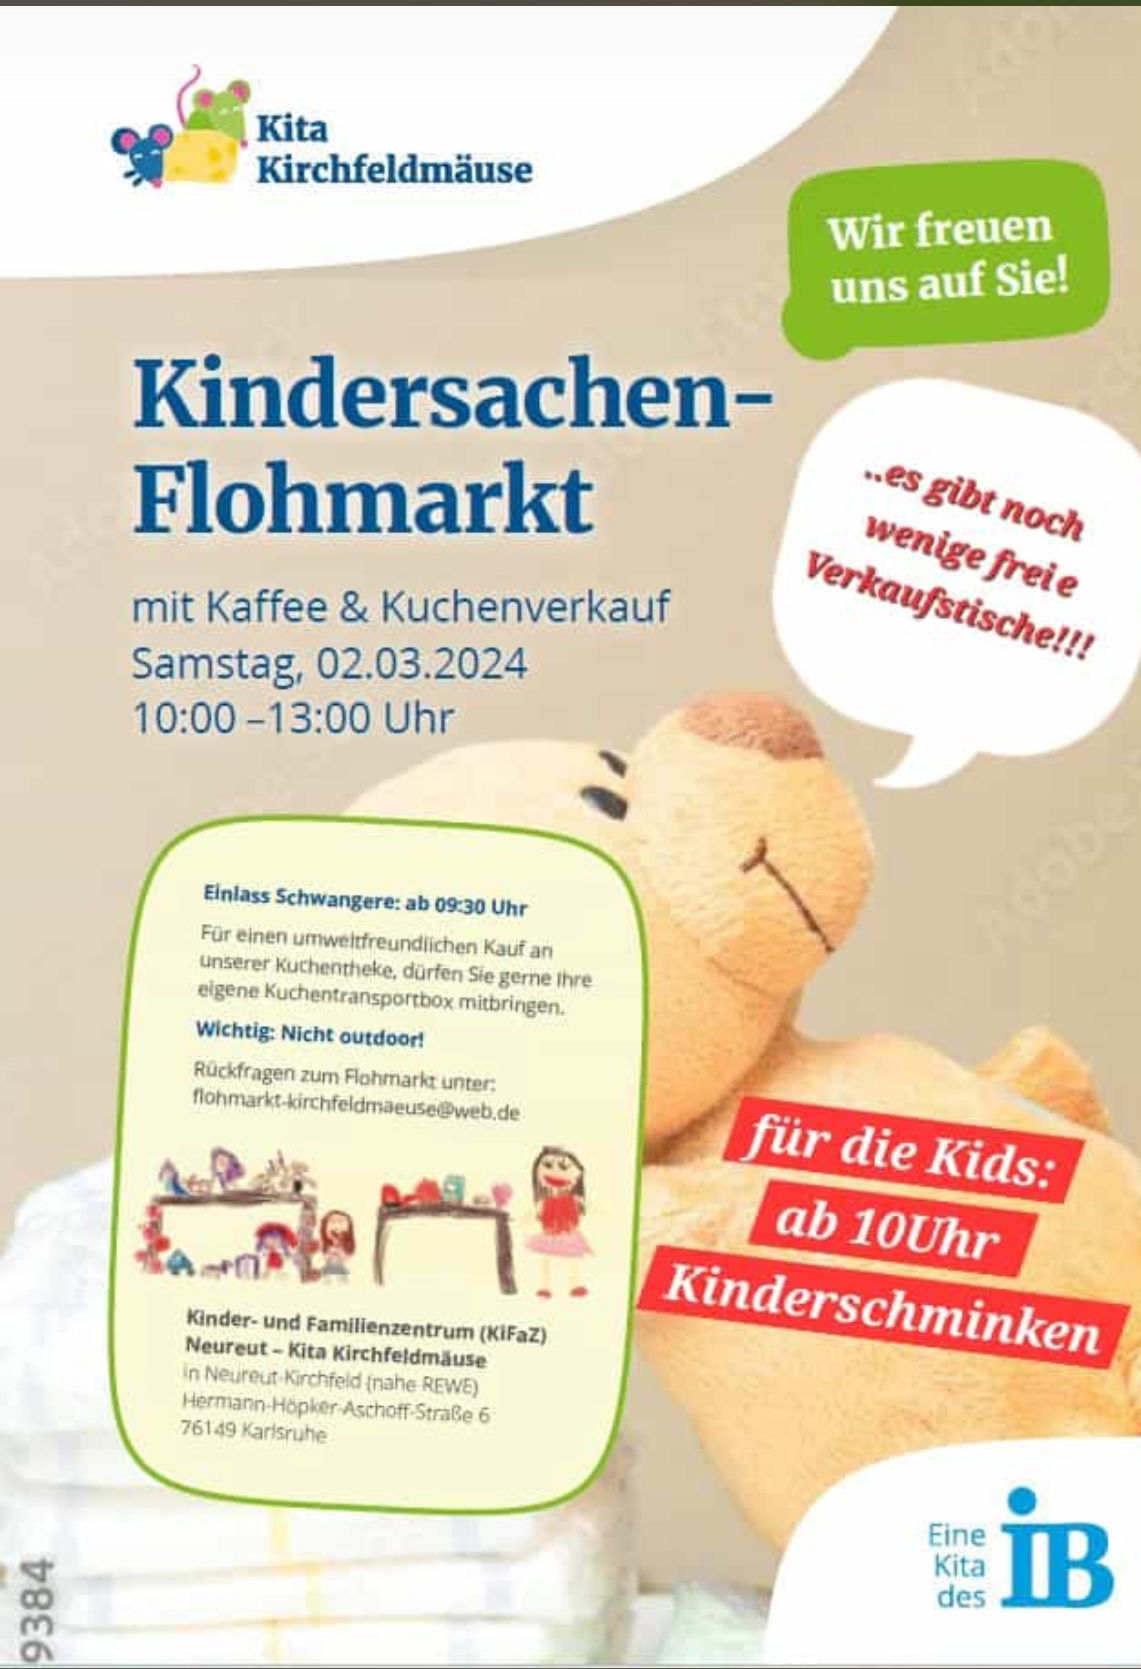 Kindersachenflohmarkt Kita Kirchfeldmäuse | Neureut